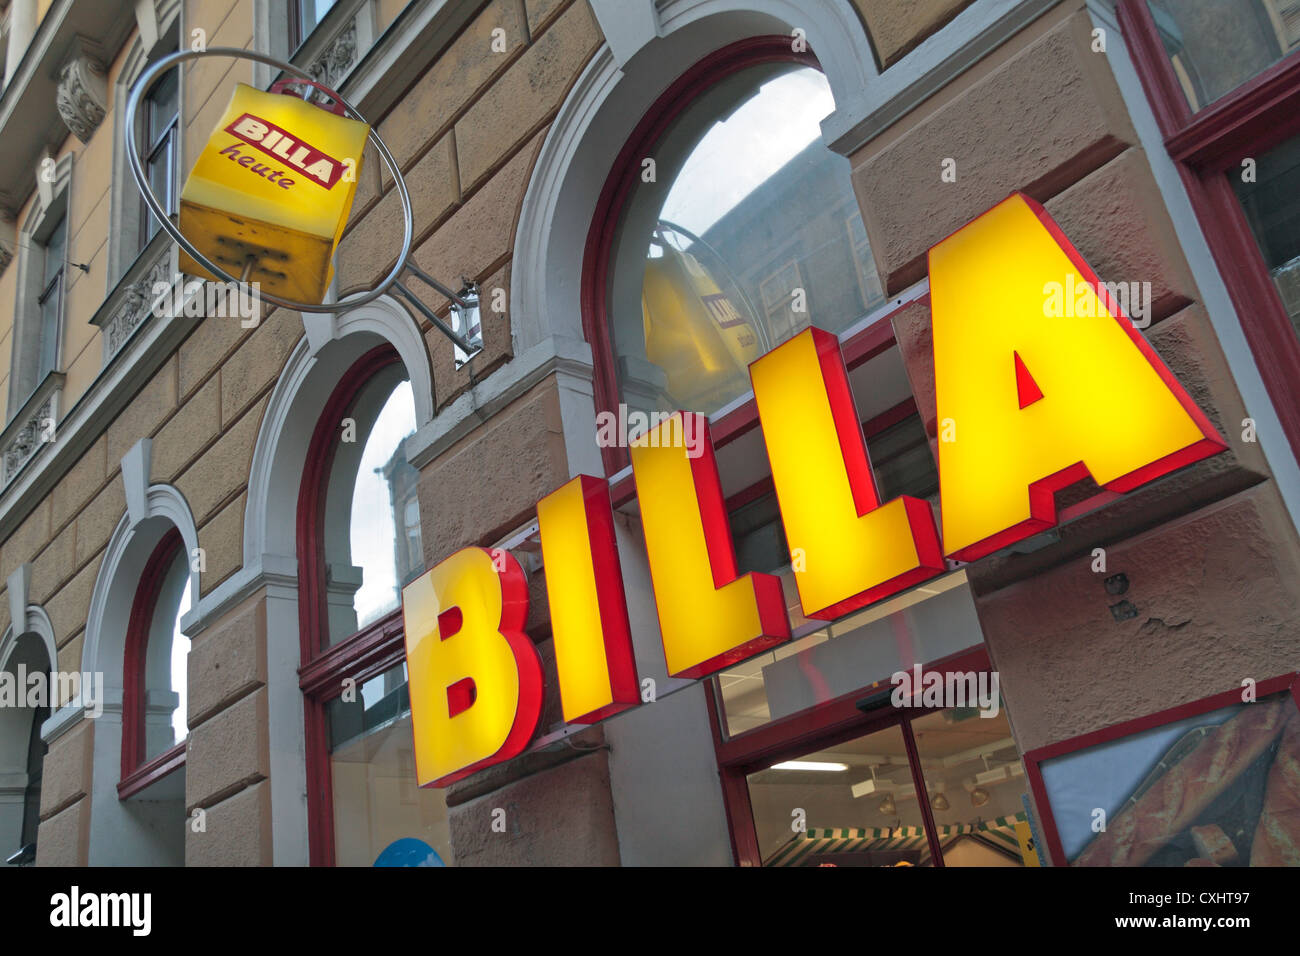 A BILLA supermarket in Vienna, Austria. Stock Photo